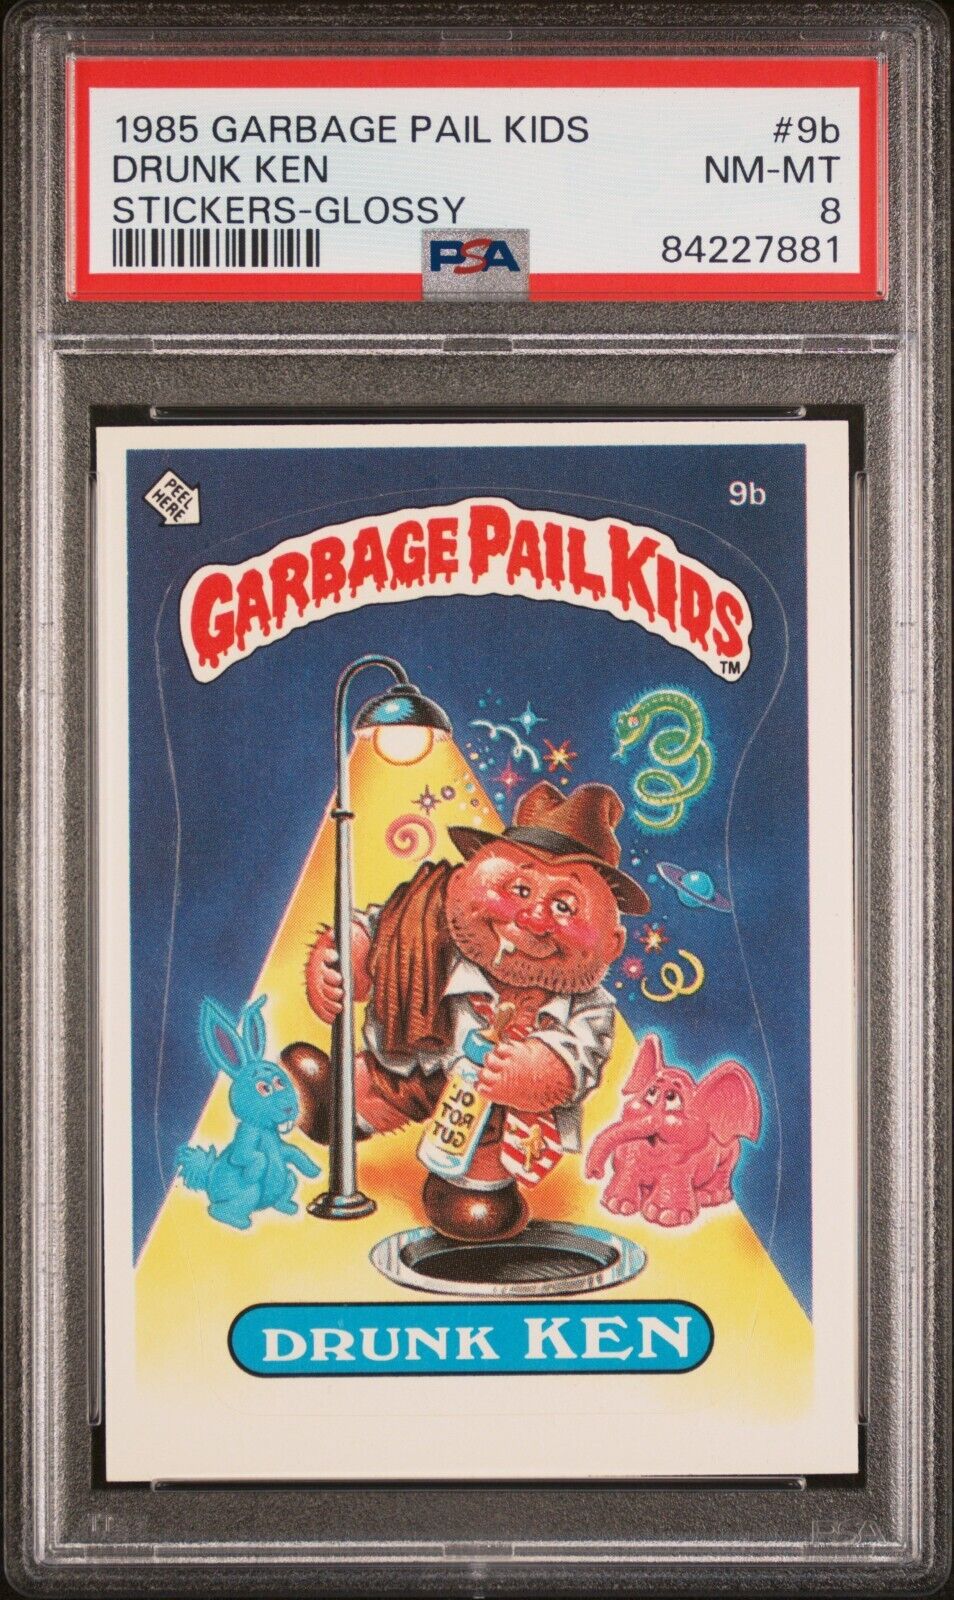 1985 Topps Garbage Pail Kids OS1 Series 1 DRUNK KEN 9b GLOSSY Card PSA 8 GPK